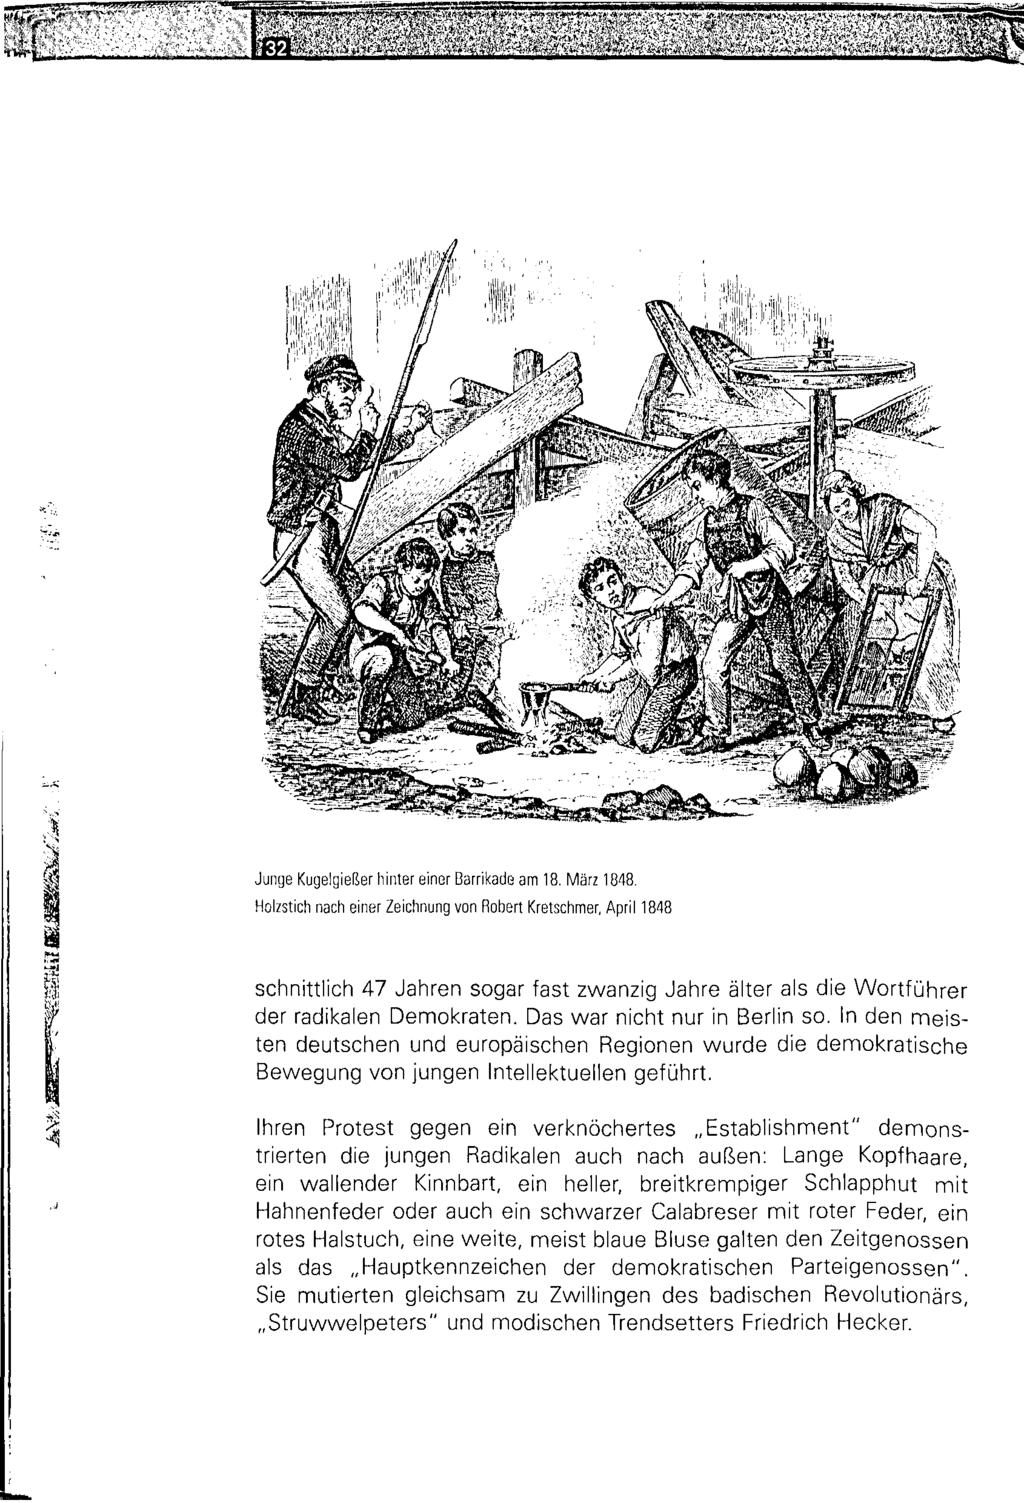 Ä * http://dx.doi.org/10.14765/zzf.dok.1.883 &a Junge Kugelgießer hinter einer Barrikade am 18. März 1848.